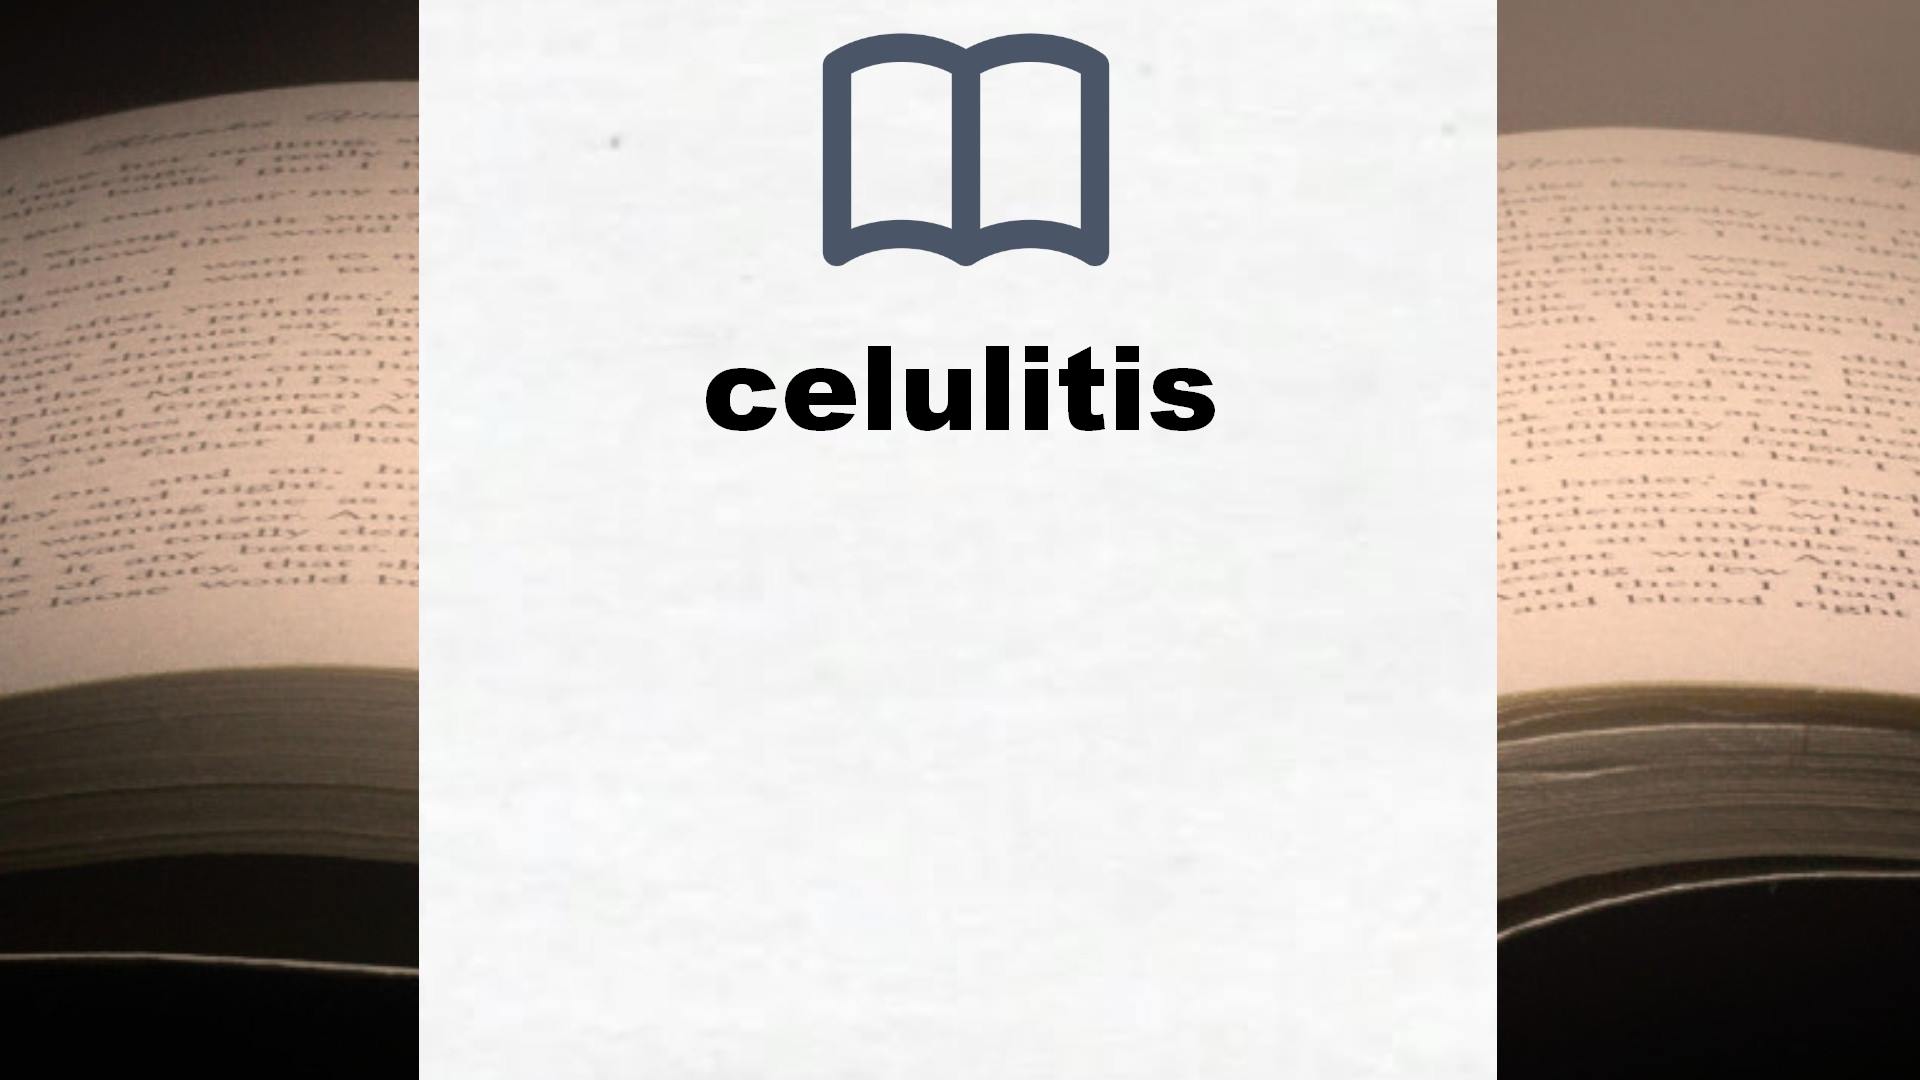 Libros sobre celulitis